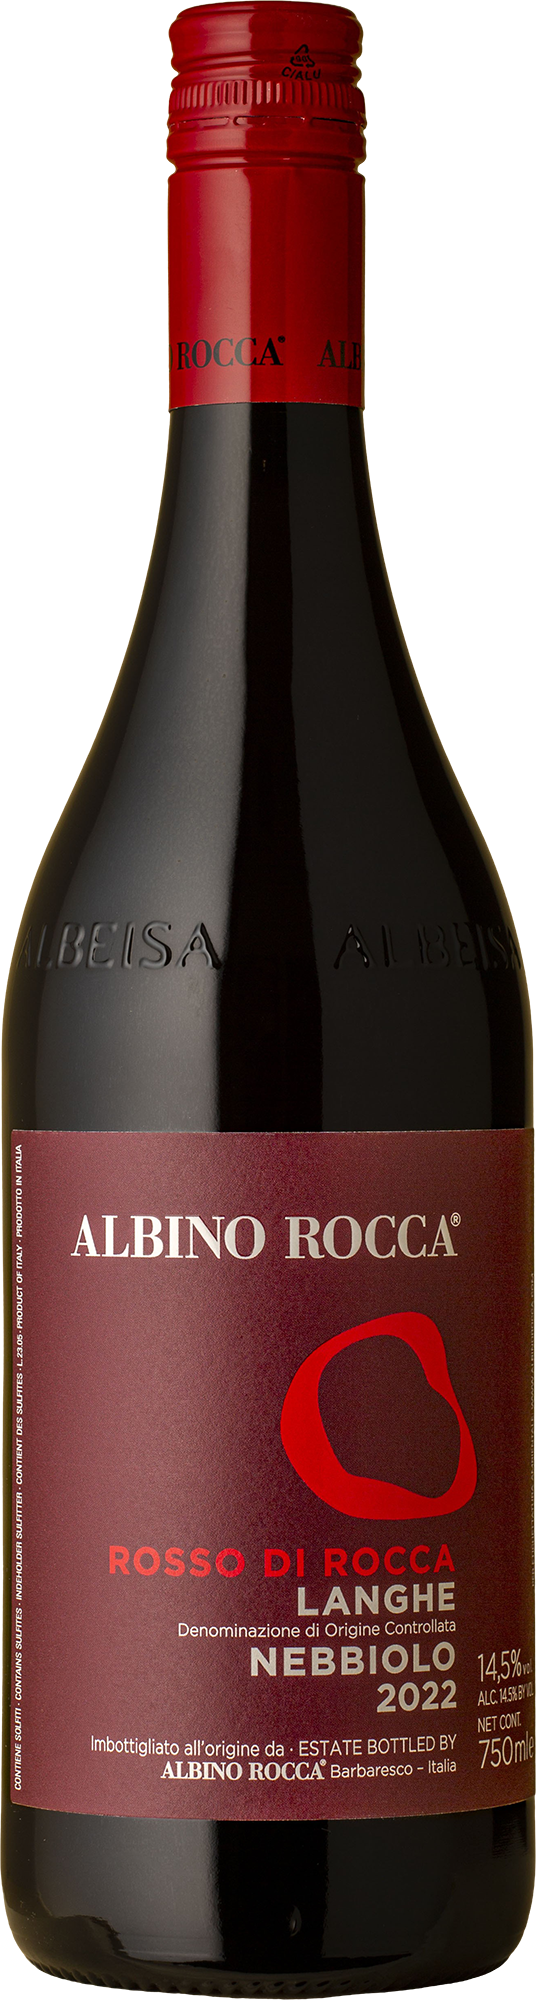 Albino Rocca - Rosso di Rocca Langhe Nebbiolo 2022 Red Wine